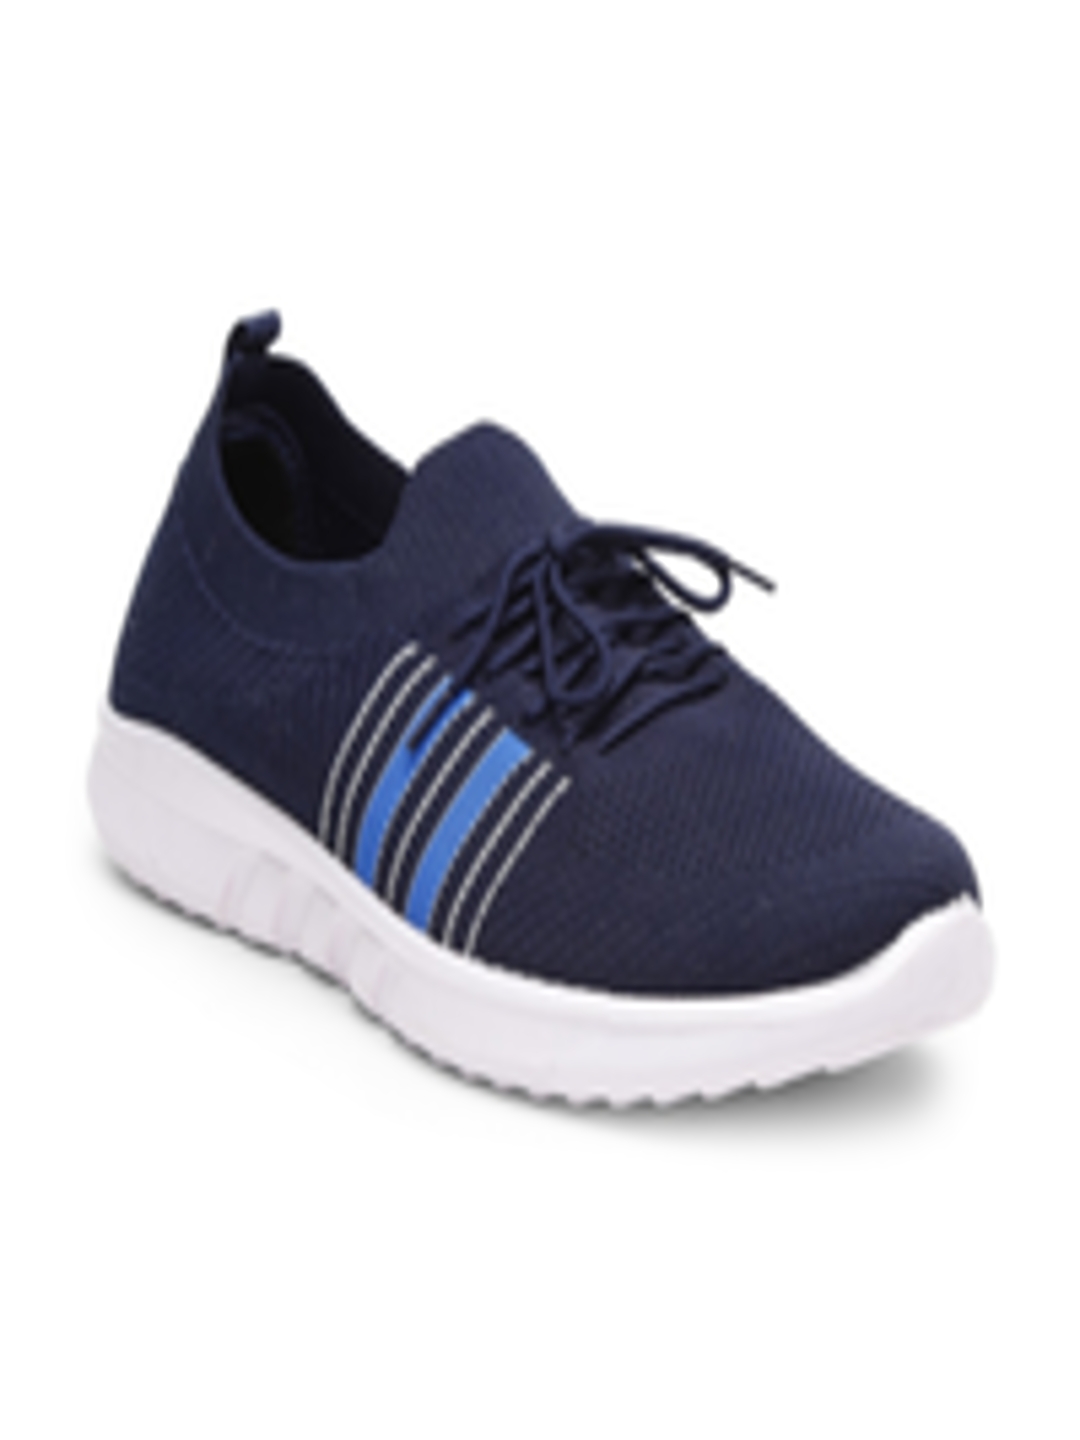 Buy KLOTTHE Men Blue Woven Design Slip On Sneakers - Casual Shoes for ...